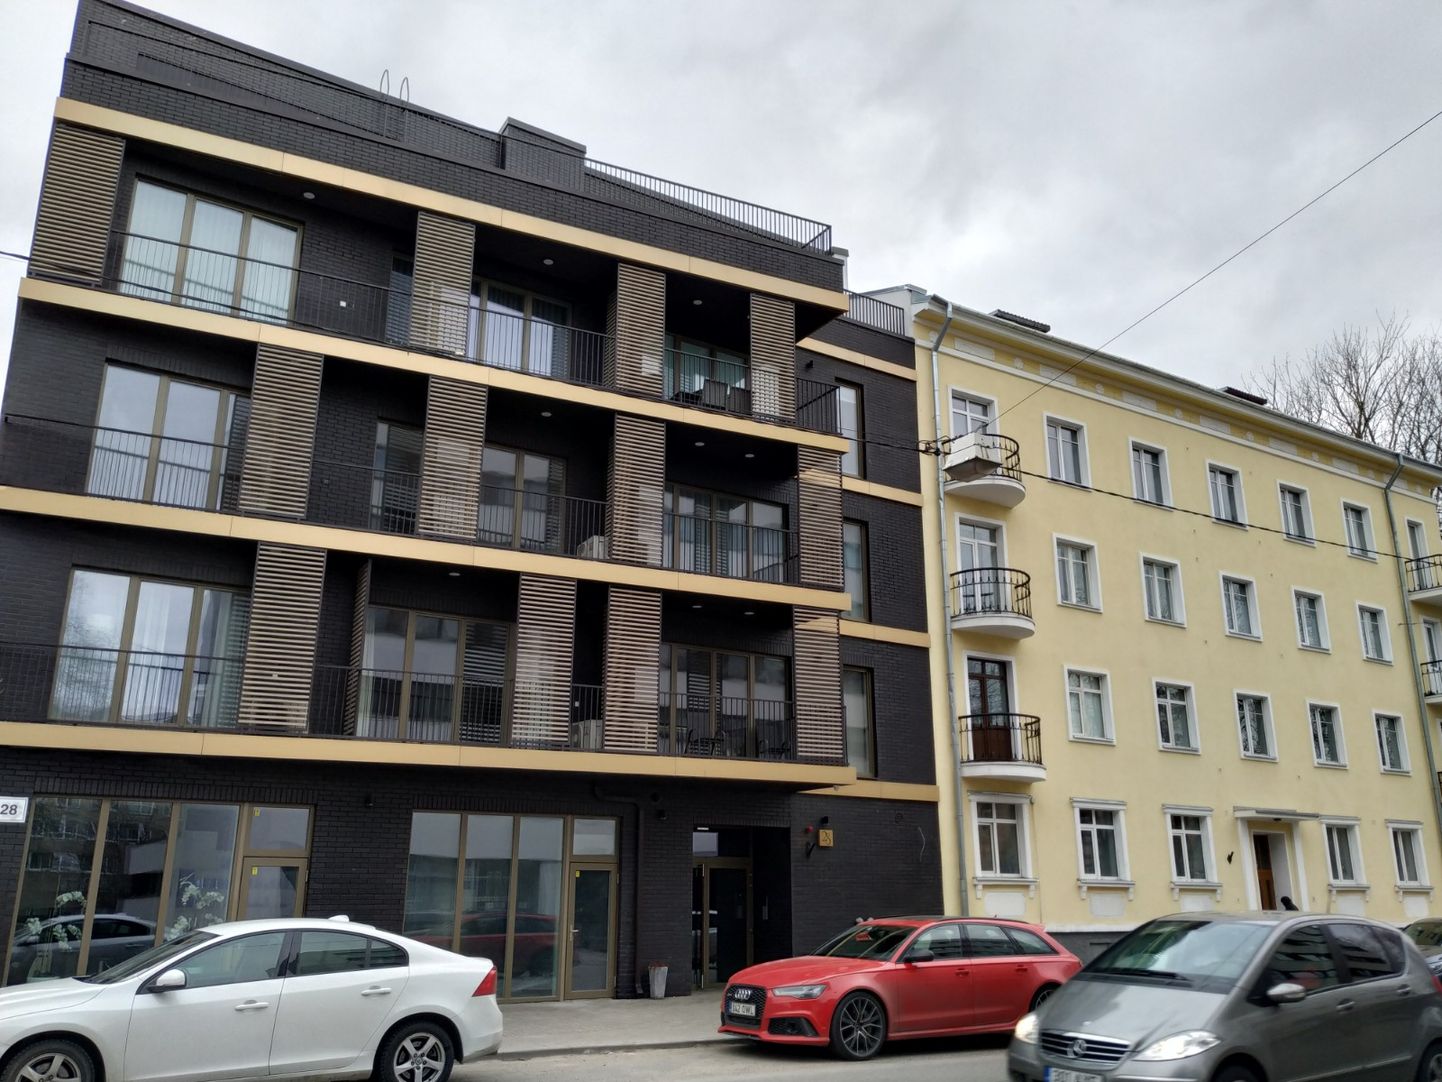 Новые жилые дома на улице Рауа в Таллинне.